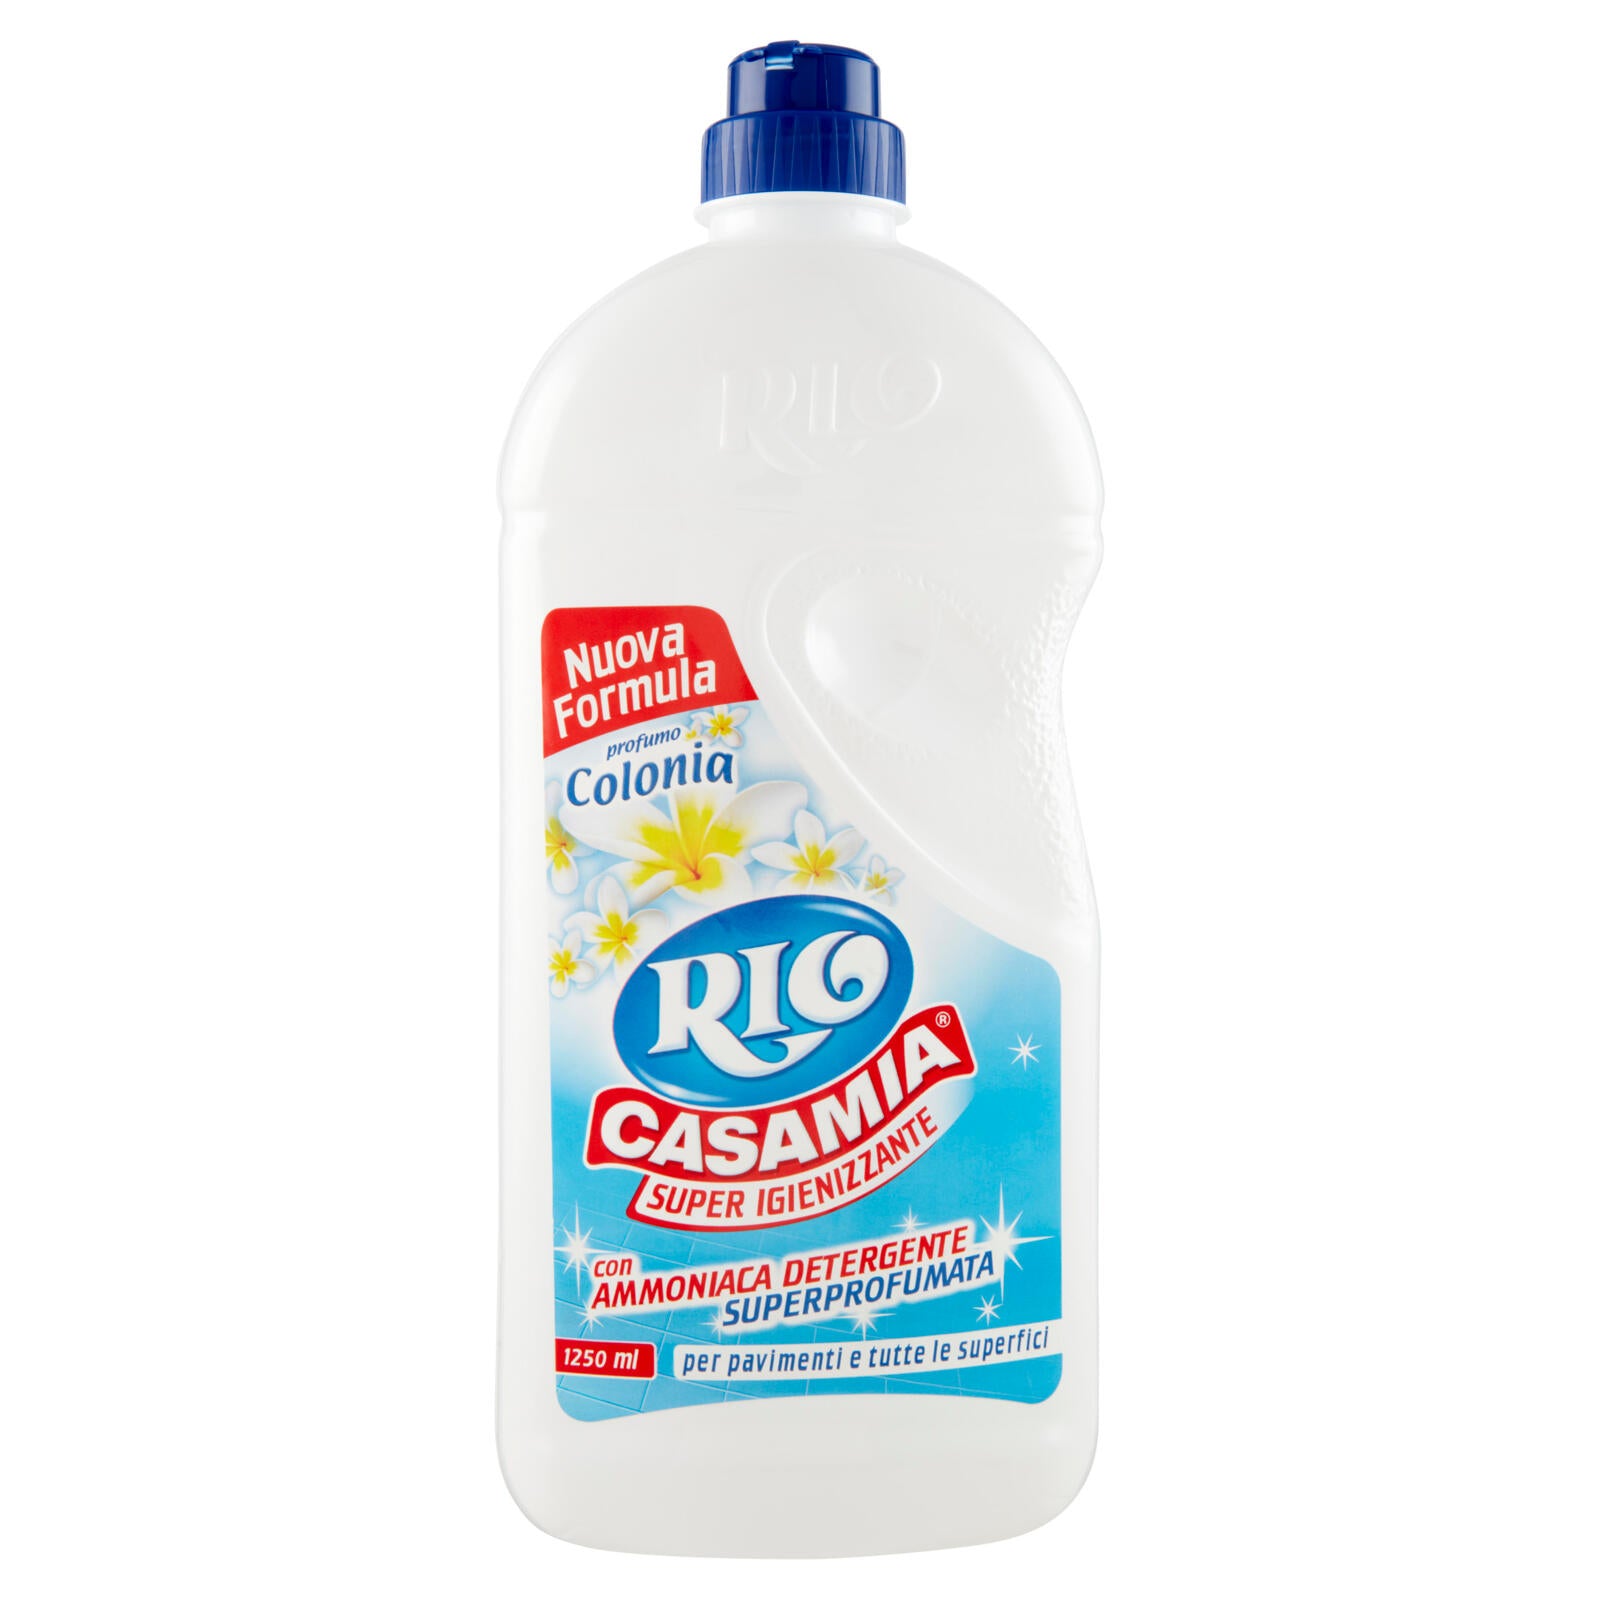 Rio Casamia Super Igienizzante con Ammoniaca Detergente